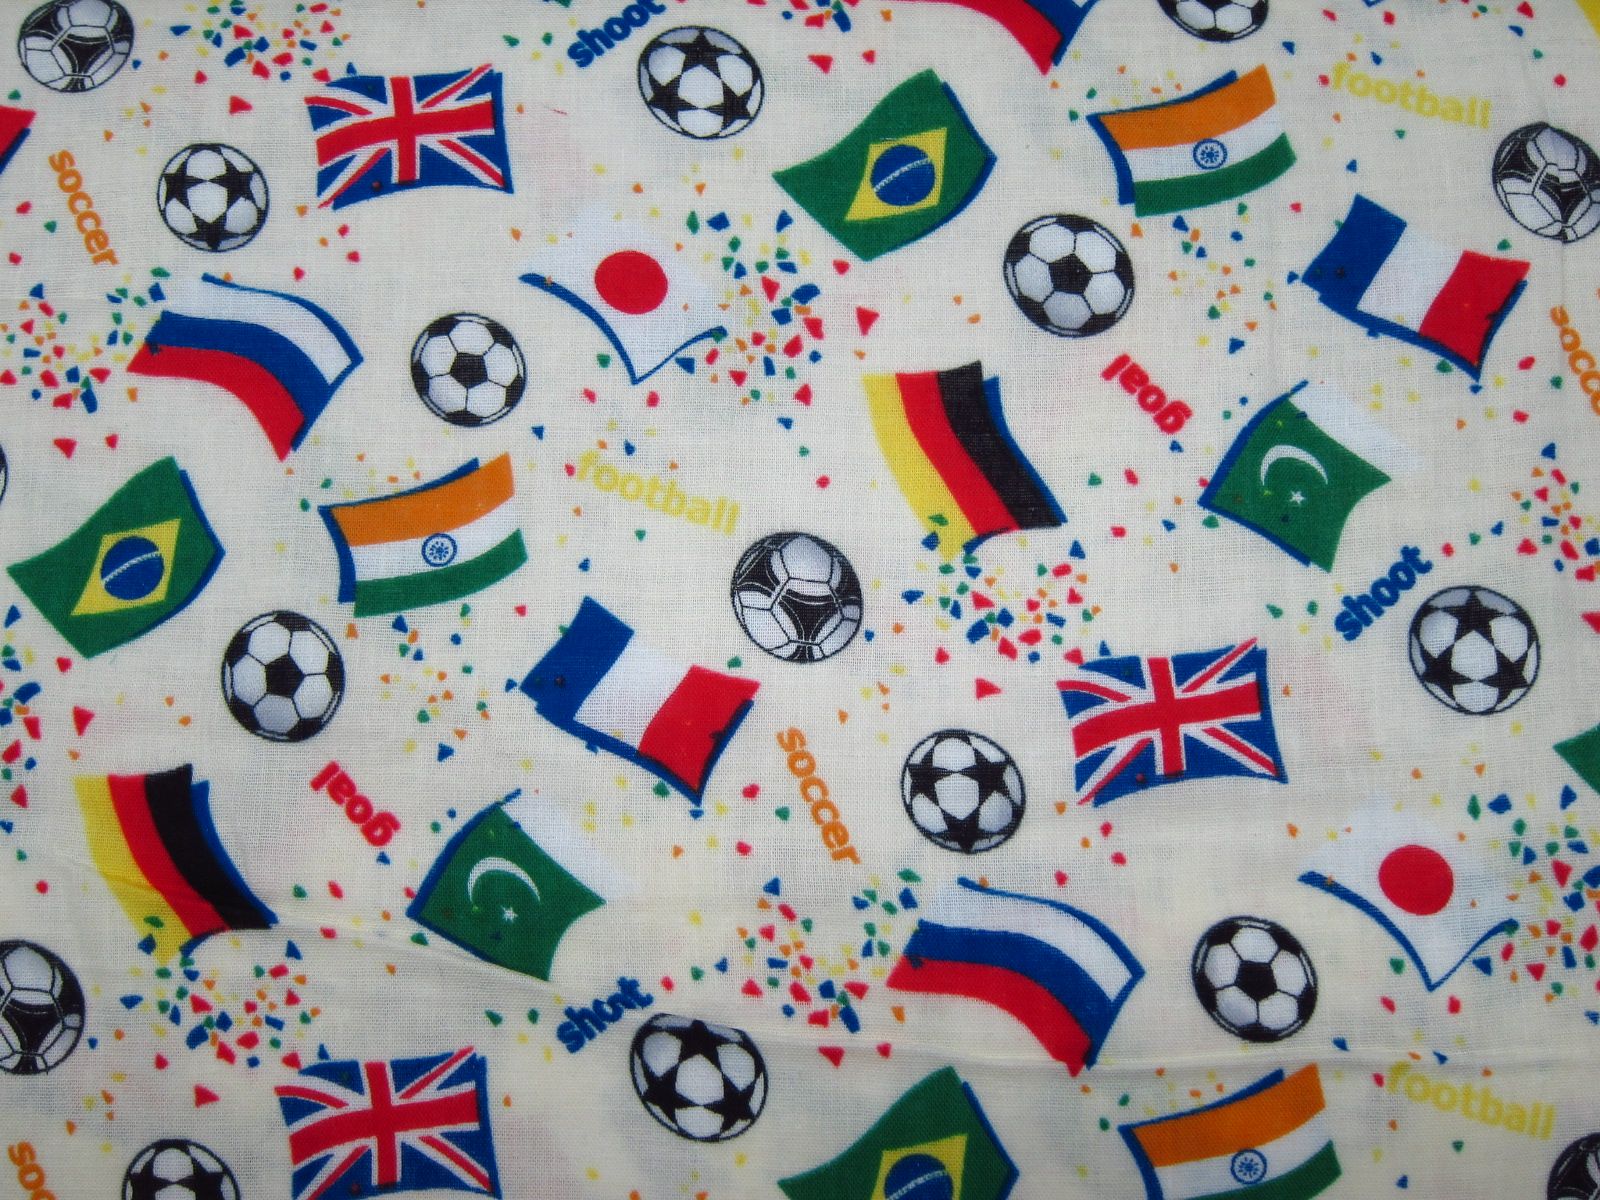 極度舒適日本進口二重紗-世界盃足球賽-米黃底、寶藍底、水藍底、深藍底-100%純綿、日本製造